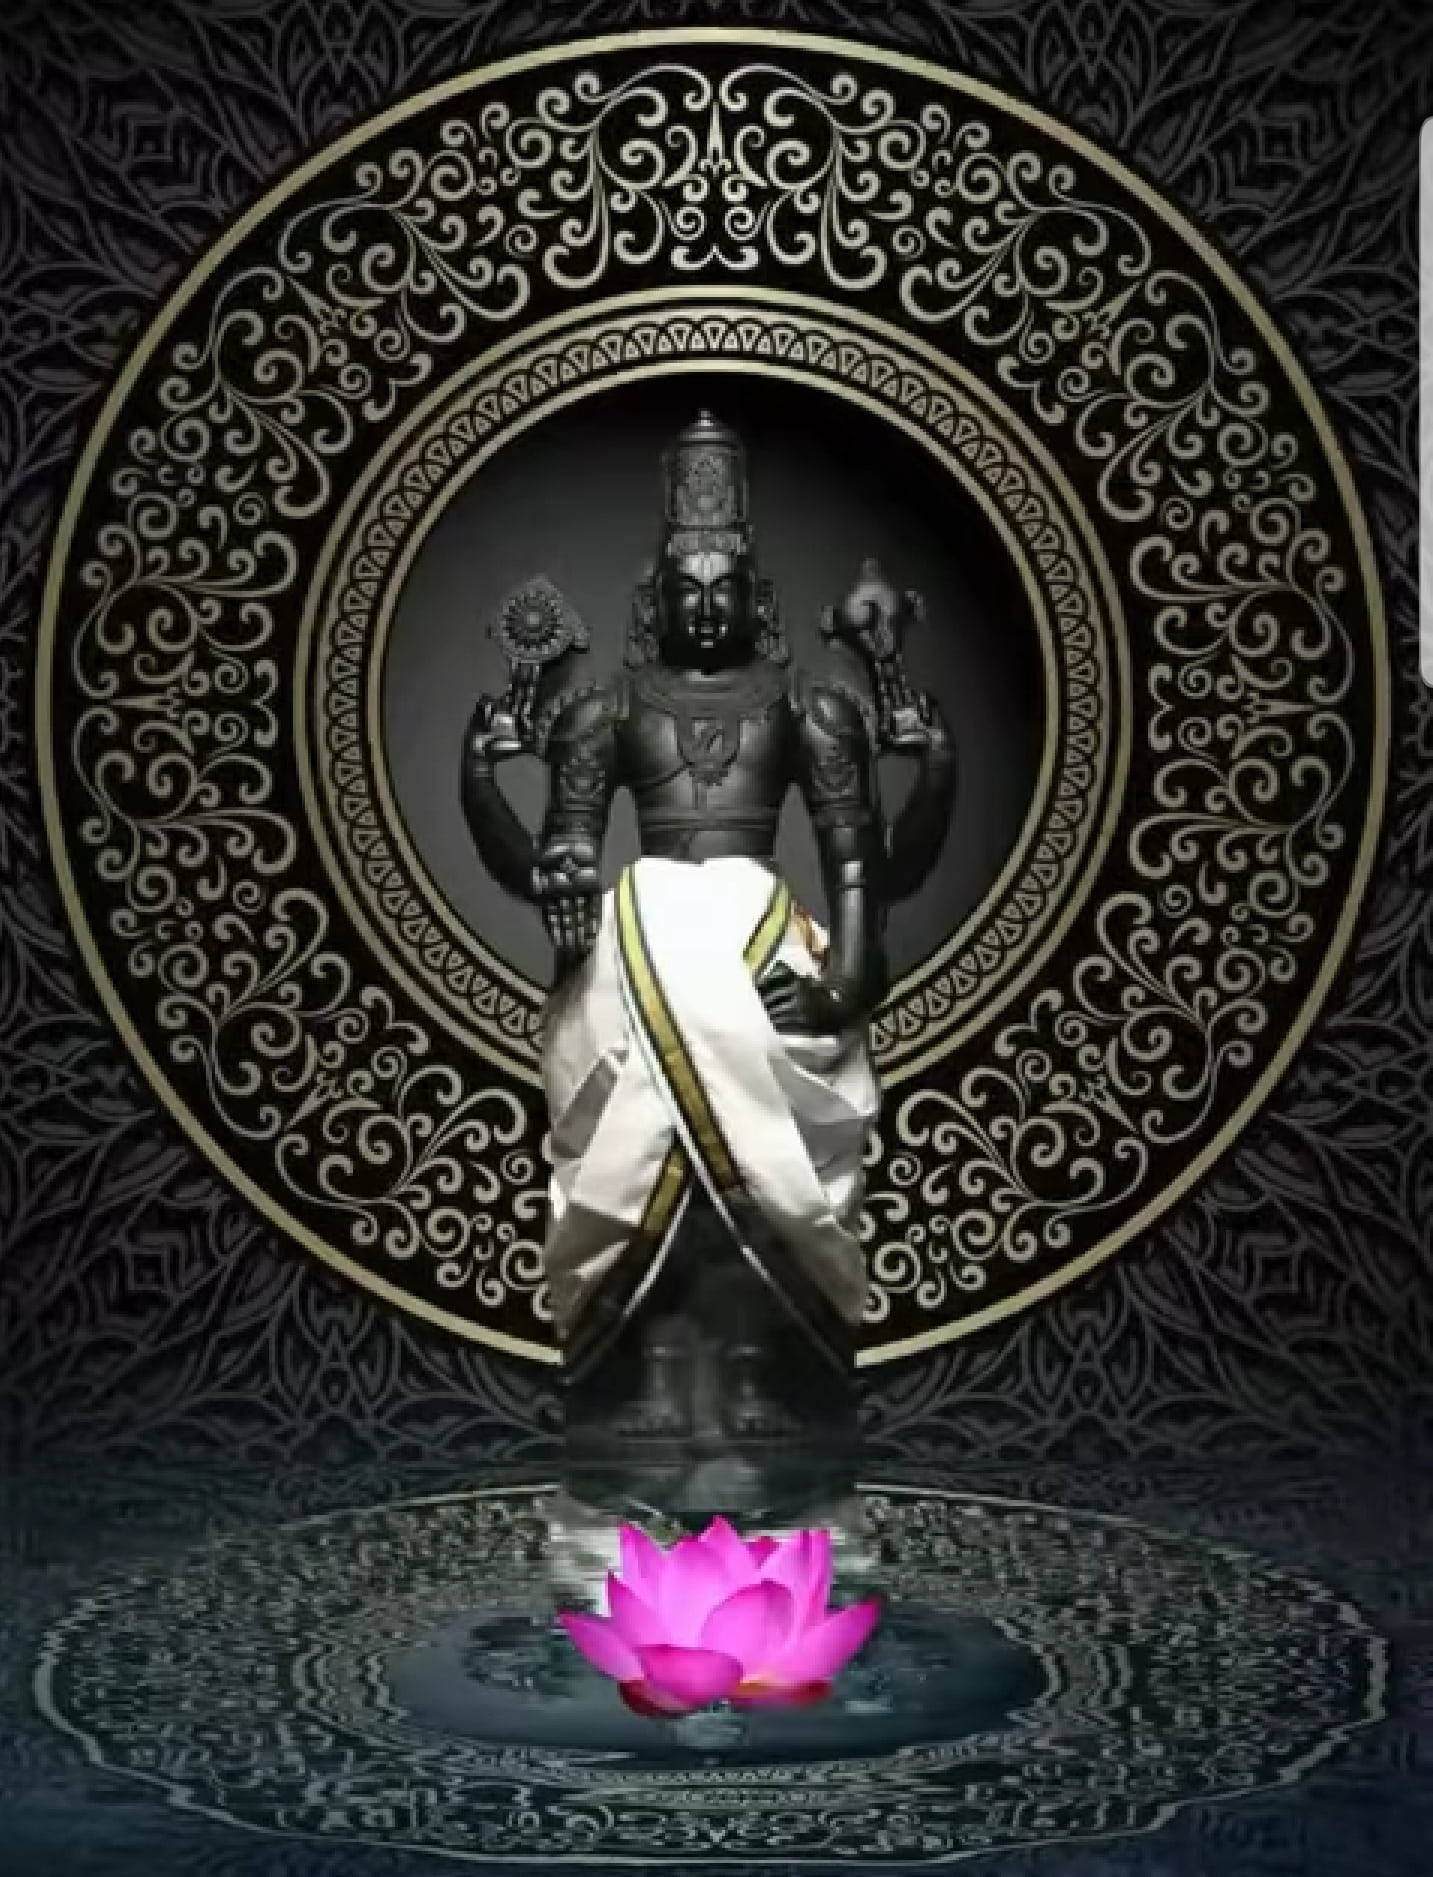 Venkateswara Swamy With Pink Indian Lotus